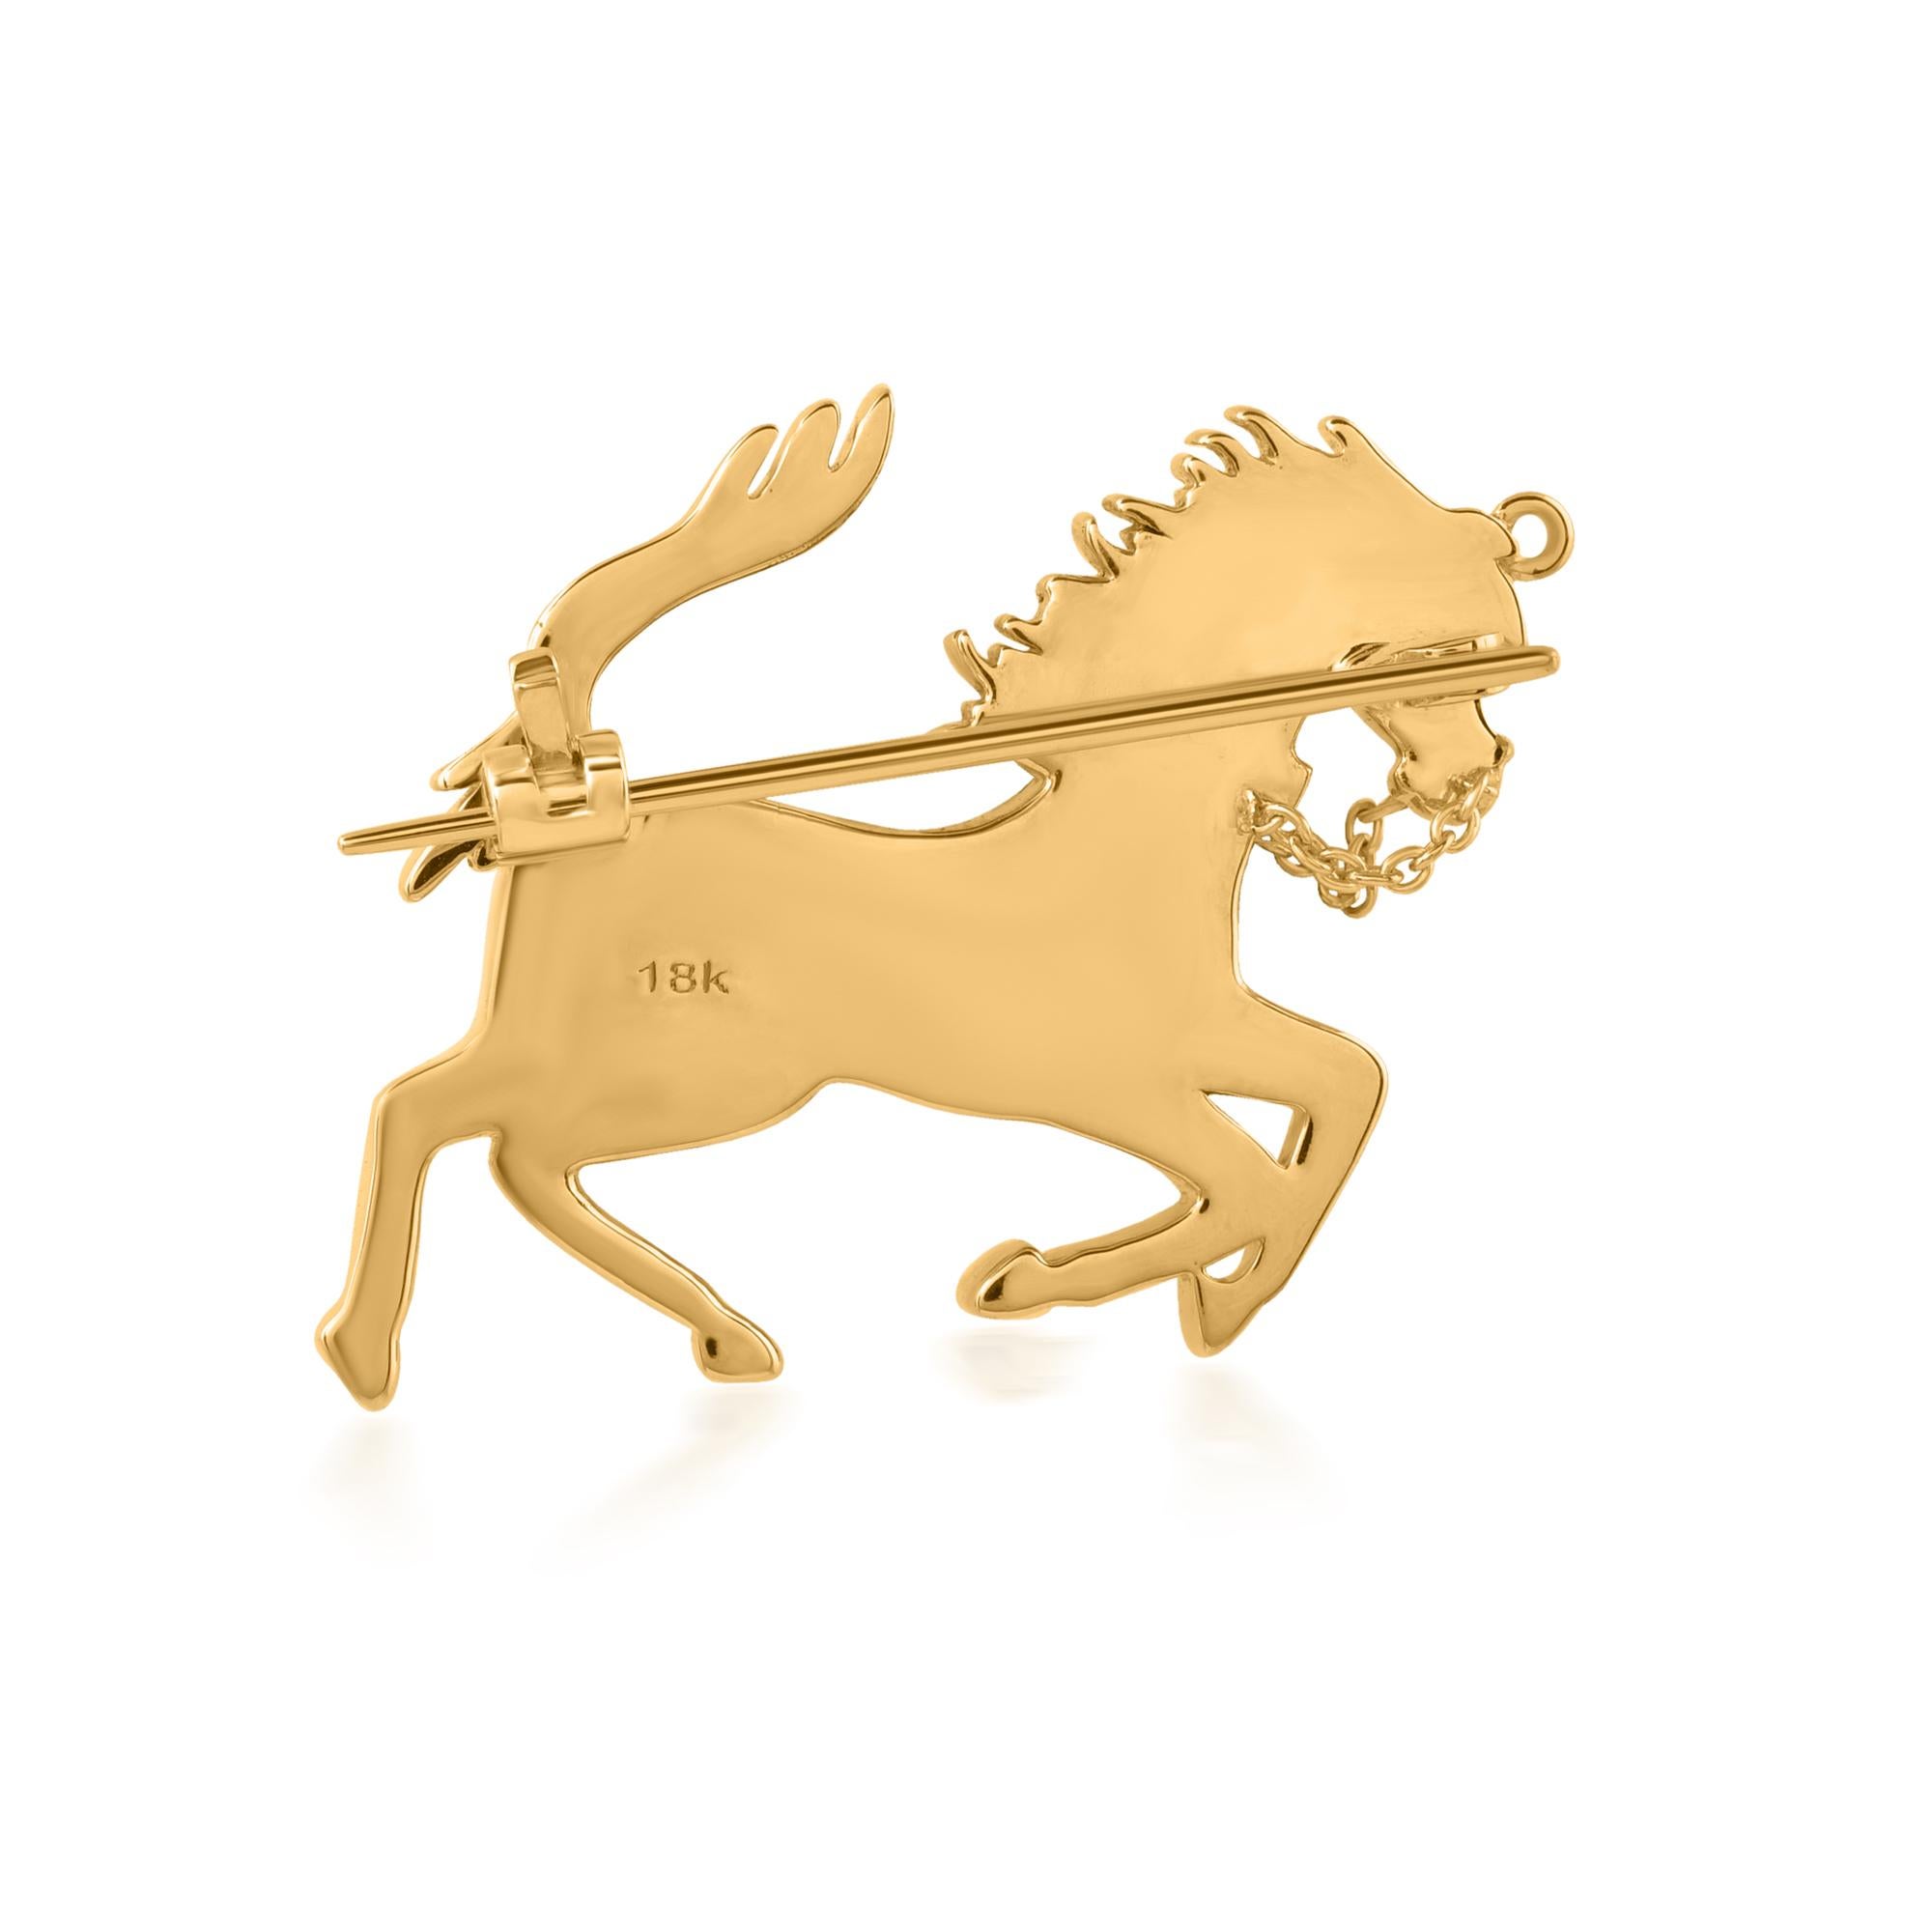 Diese natürliche SI Clarity HI Color Diamond Horse Pendant Brooch ist ein Symbol für Stärke, Schönheit und Anmut und eignet sich perfekt für Pferdeliebhaber und Schmuckliebhaber gleichermaßen. Mit seiner zeitlosen Anziehungskraft und seinem